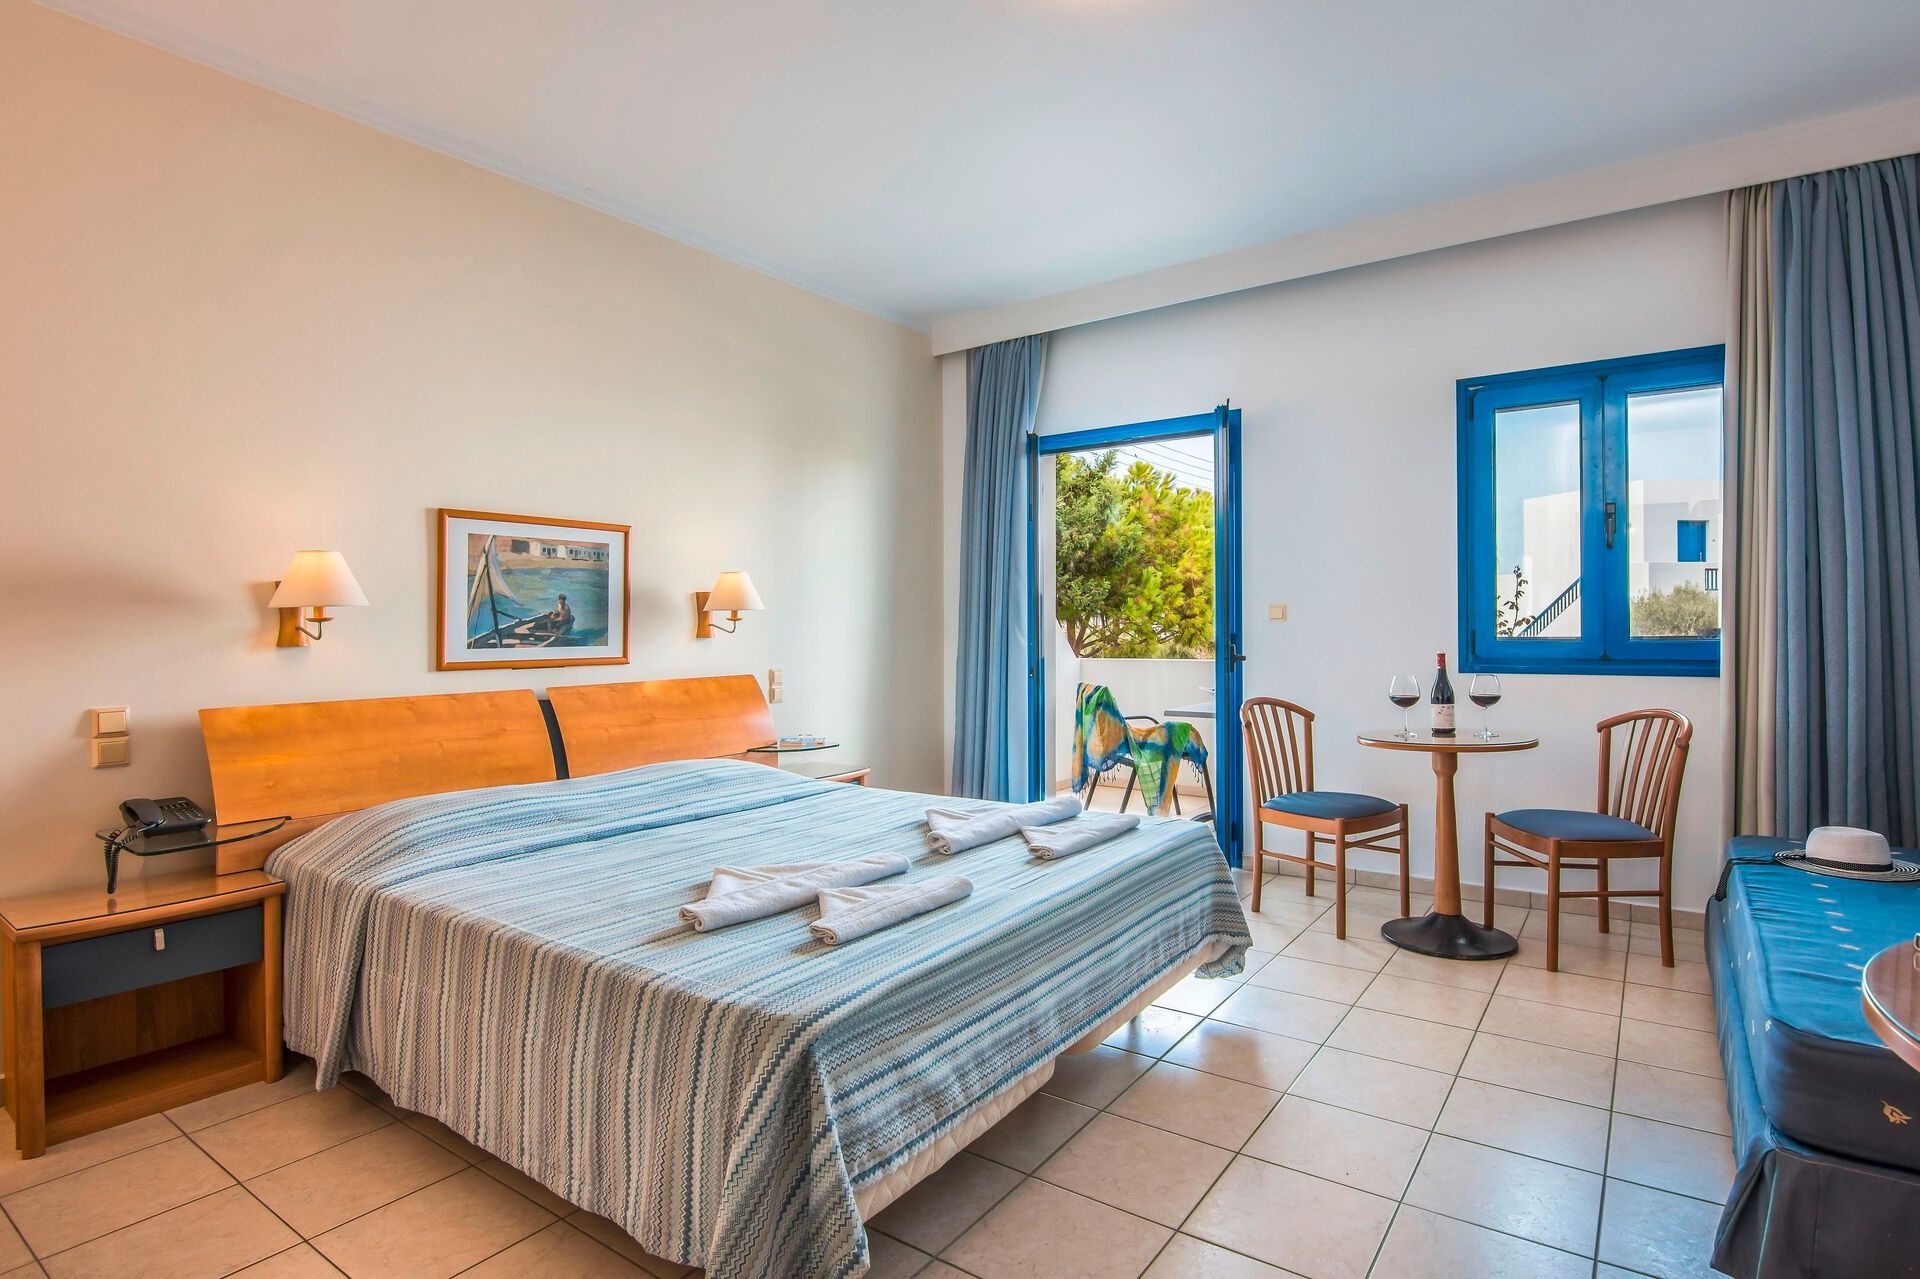 Crète - Gouves - Grèce - Iles grecques - Hara Ilios Village Hotel 4*